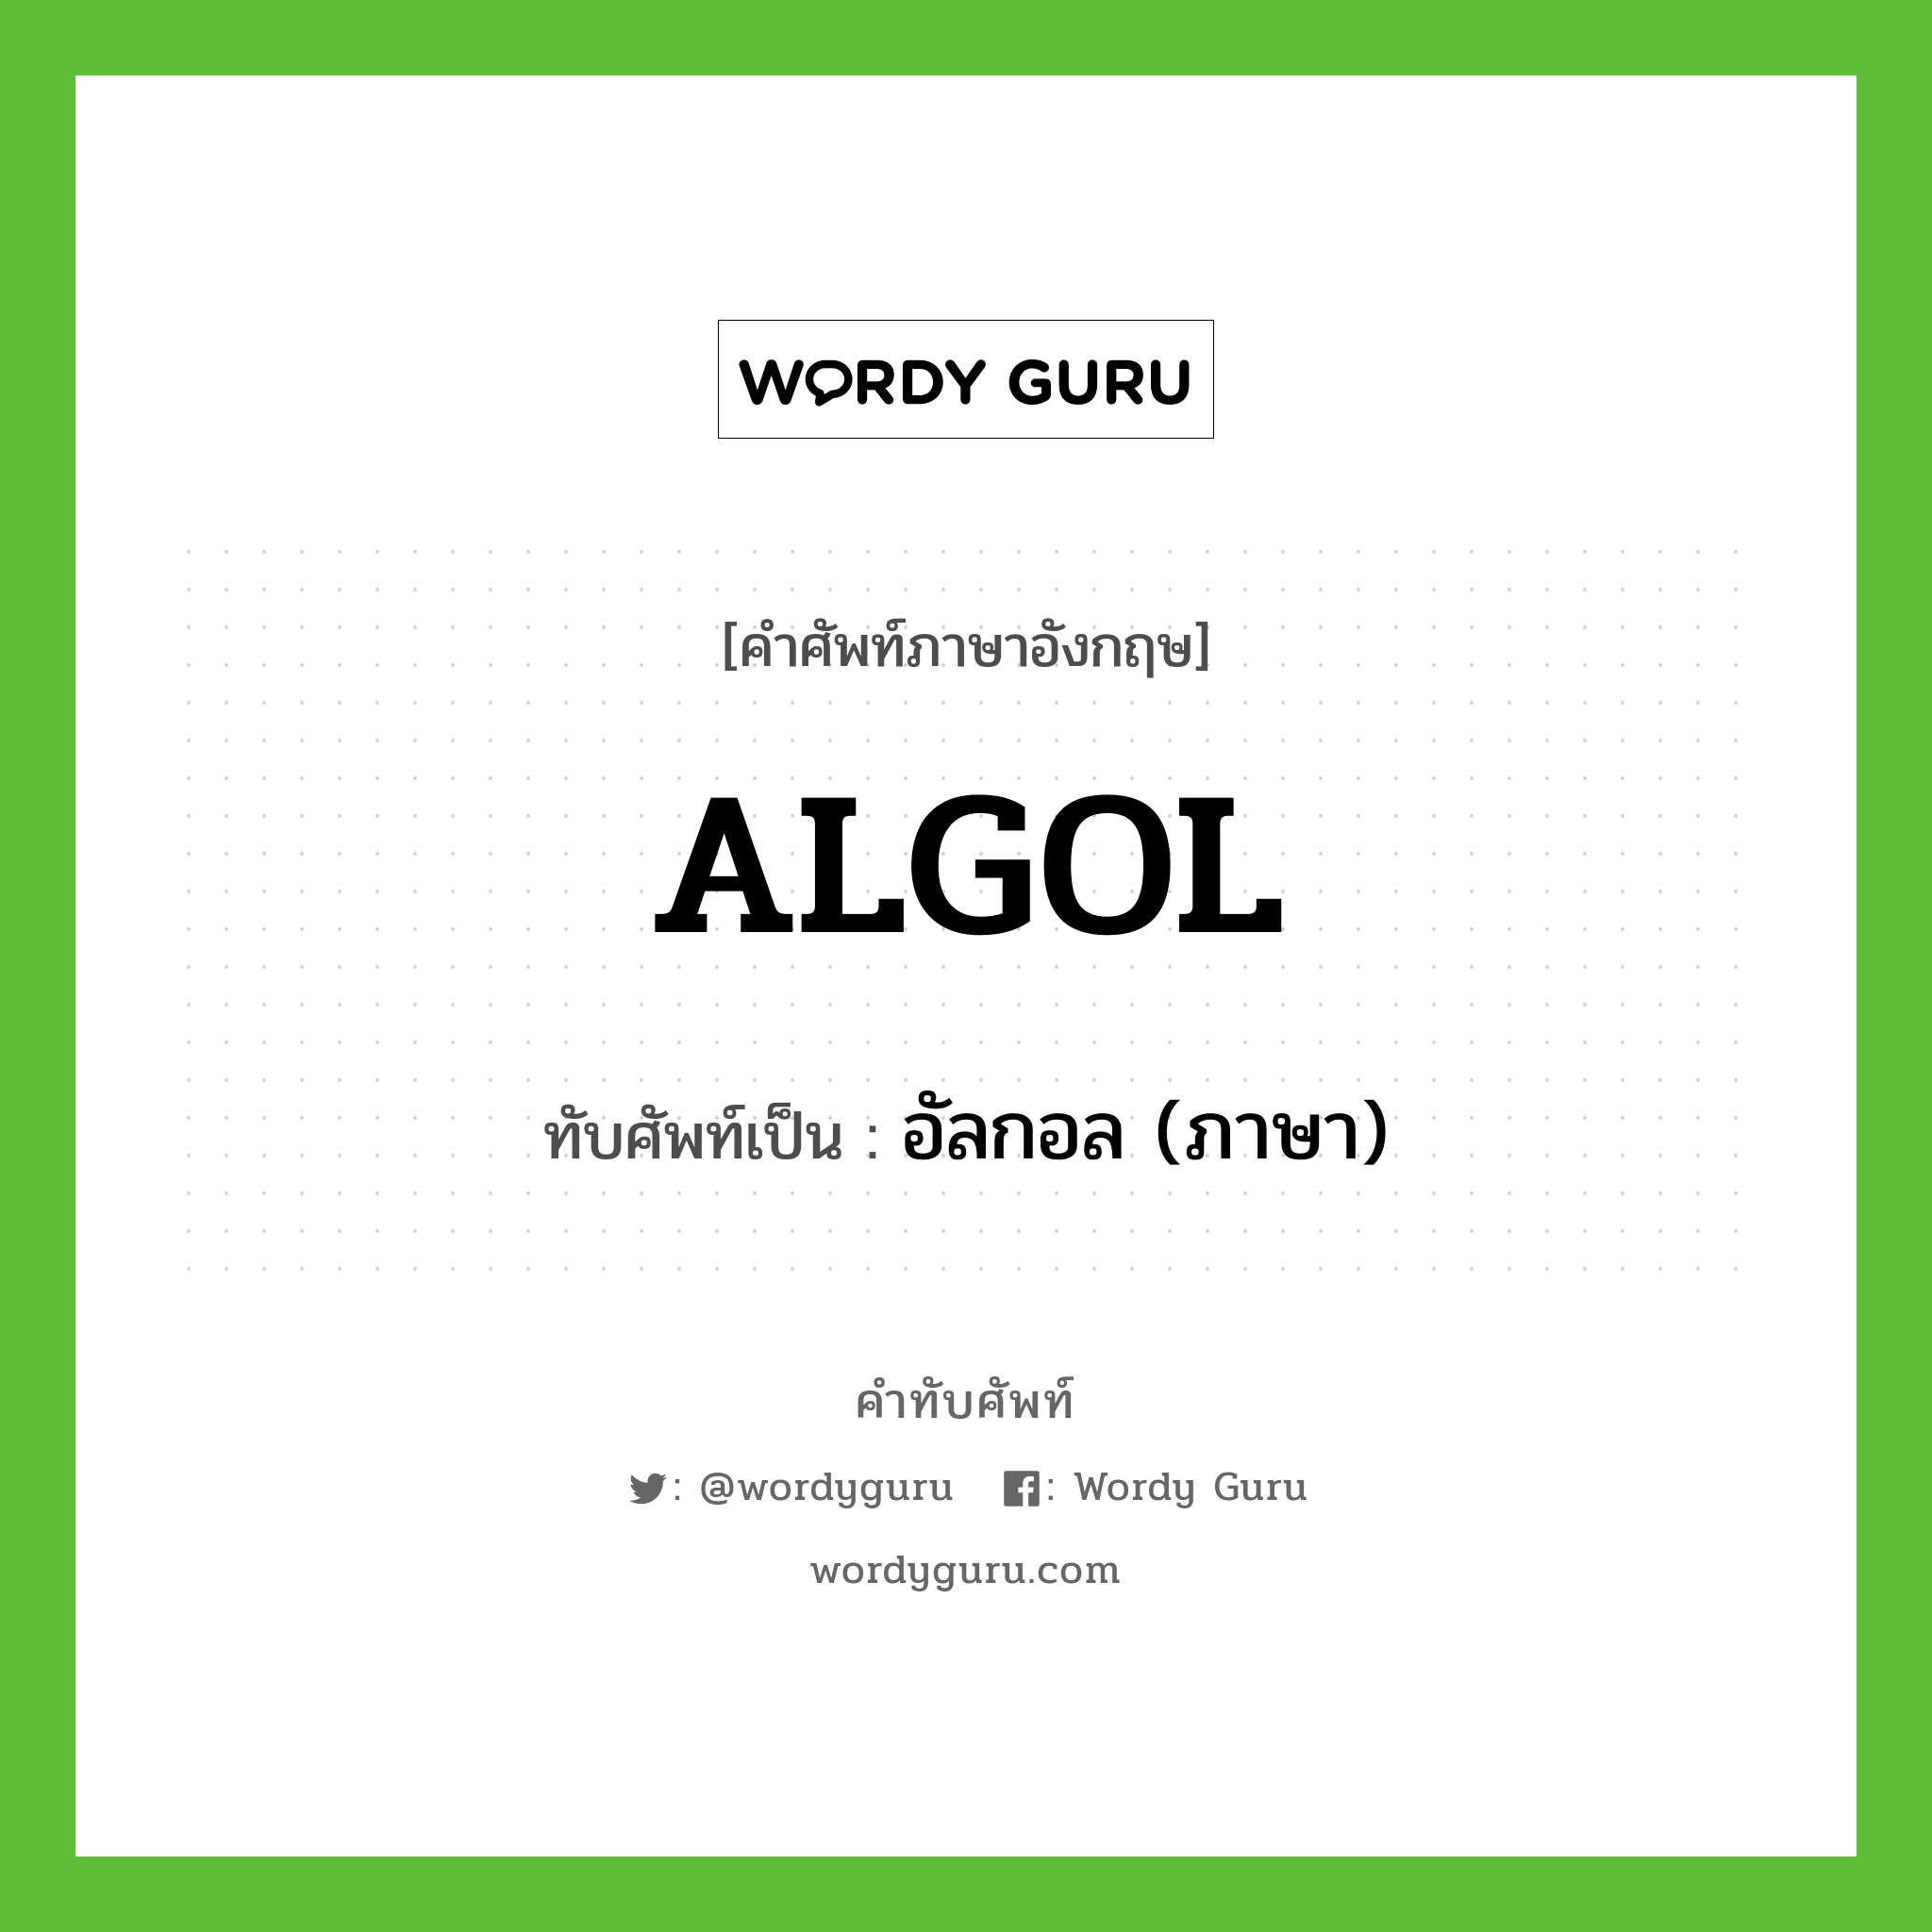 อัลกอล (ภาษา) เขียนอย่างไร?, คำศัพท์ภาษาอังกฤษ อัลกอล (ภาษา) ทับศัพท์เป็น ALGOL